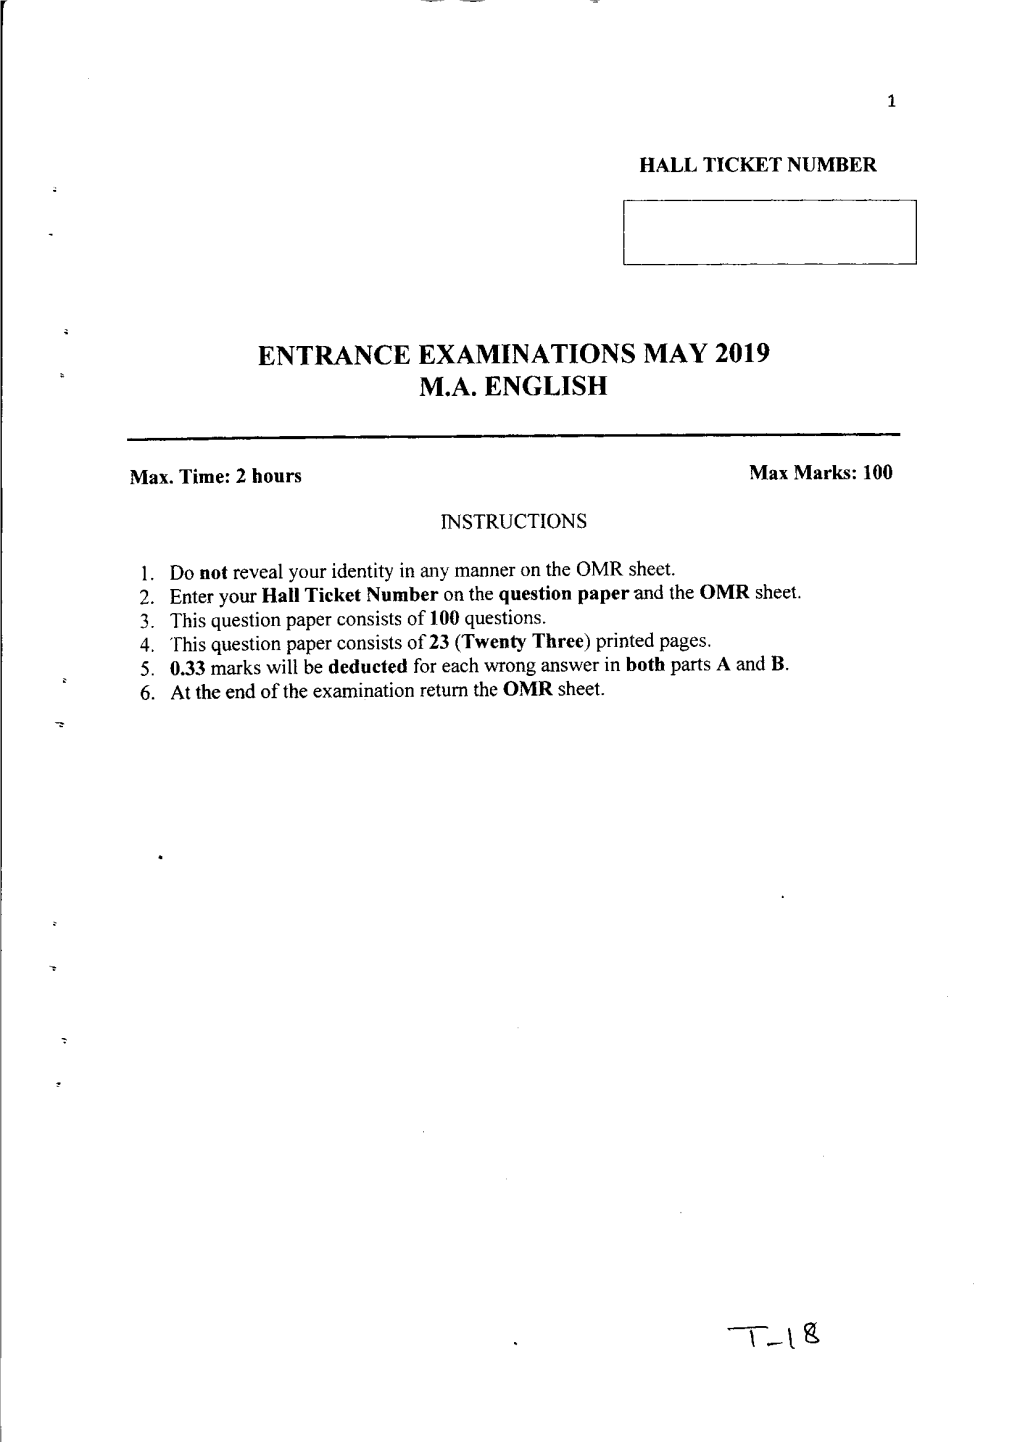 Entrance Examinations May 2019 M.A. English